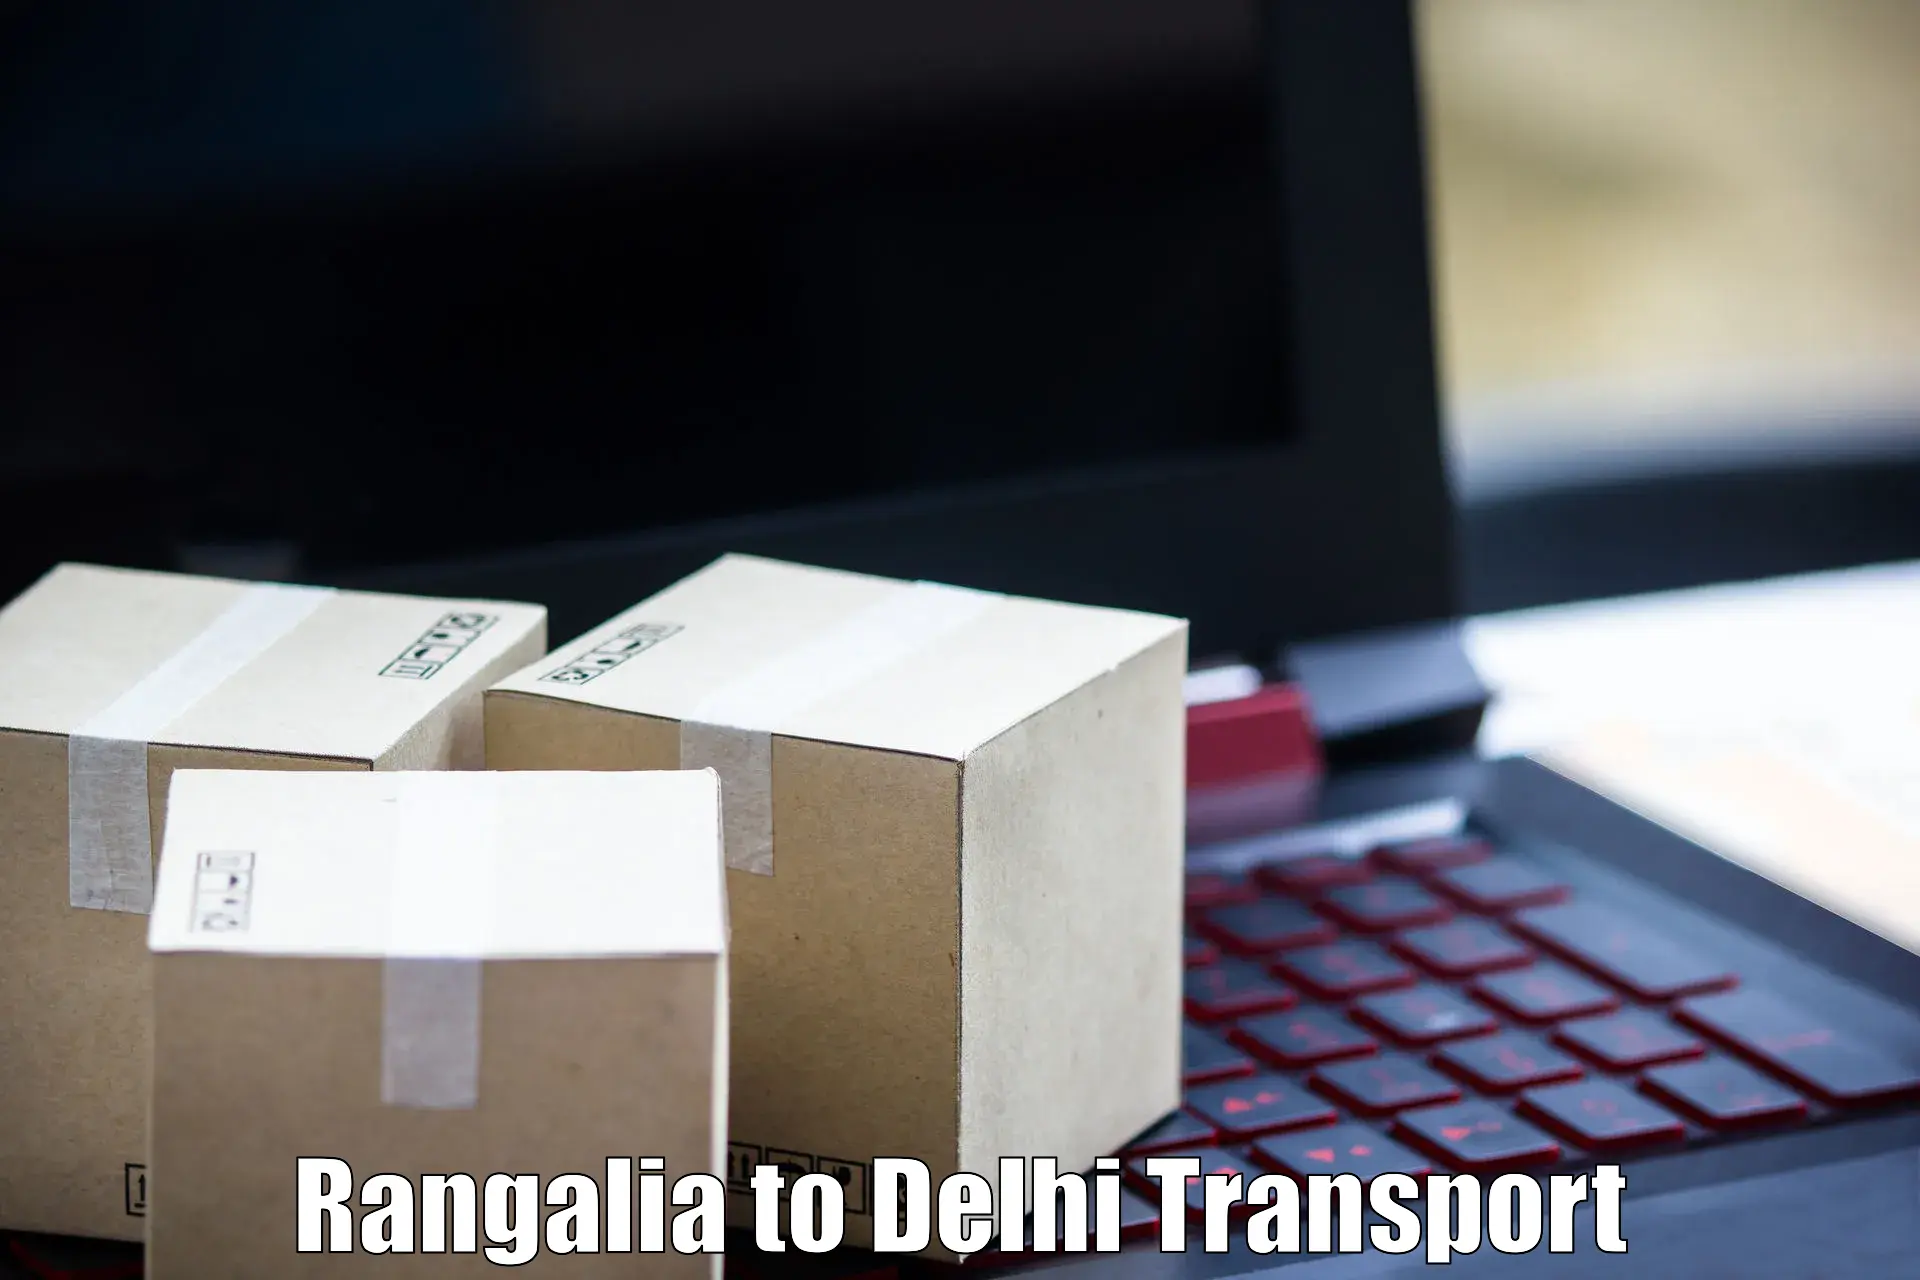 Nearby transport service Rangalia to NCR